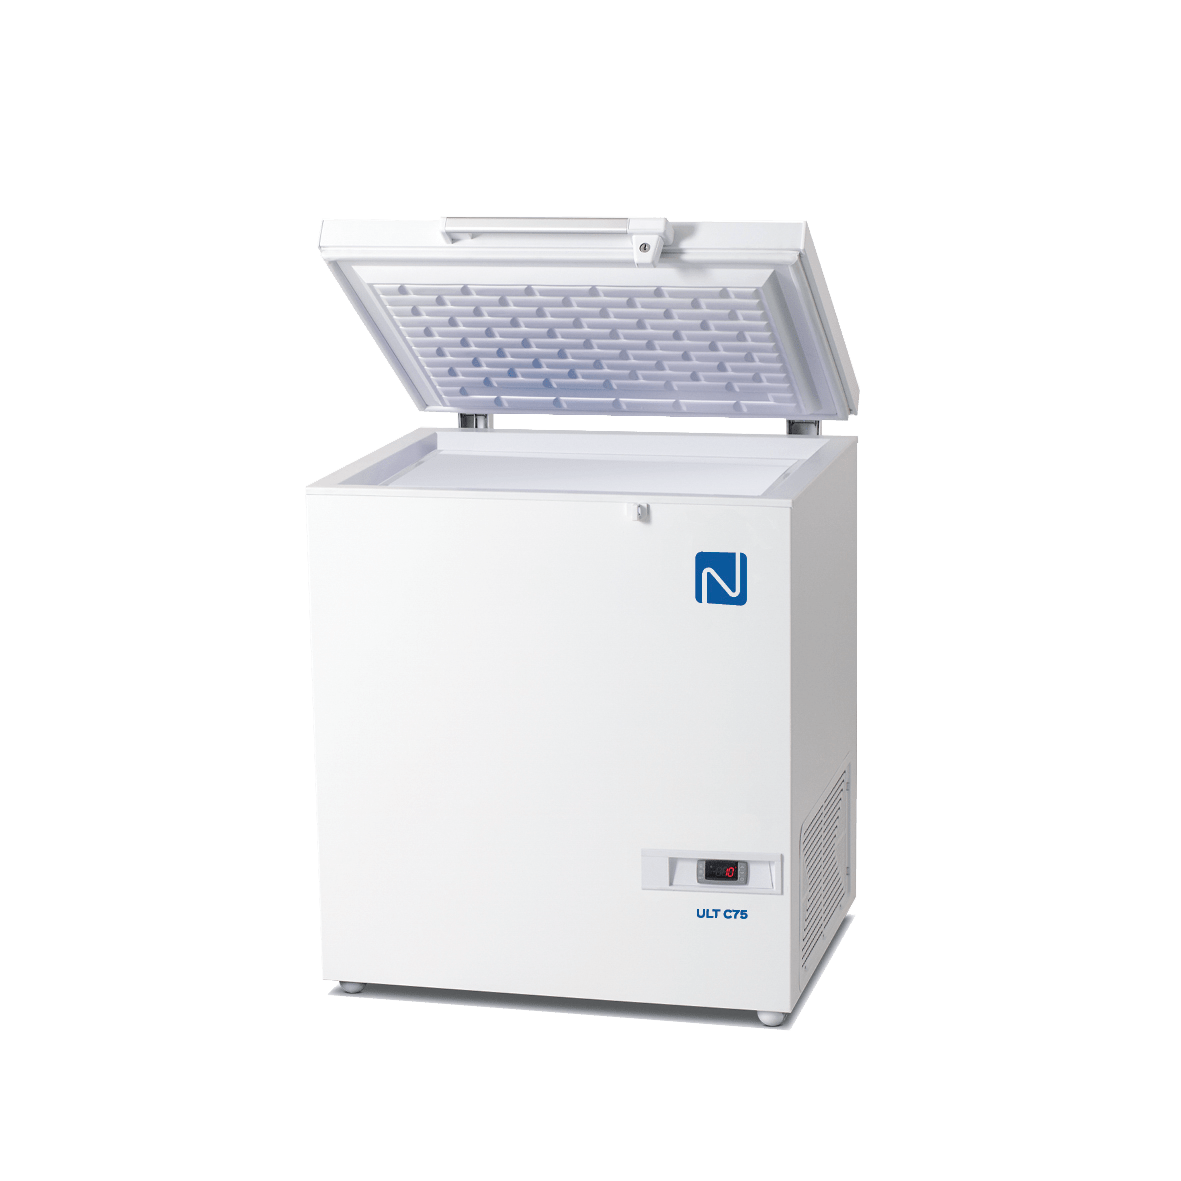 Arcones congeladores - 86 °C Twinguard - Congeladores / Neveras PHCBI -  Equipos - Equipo de laboratorio